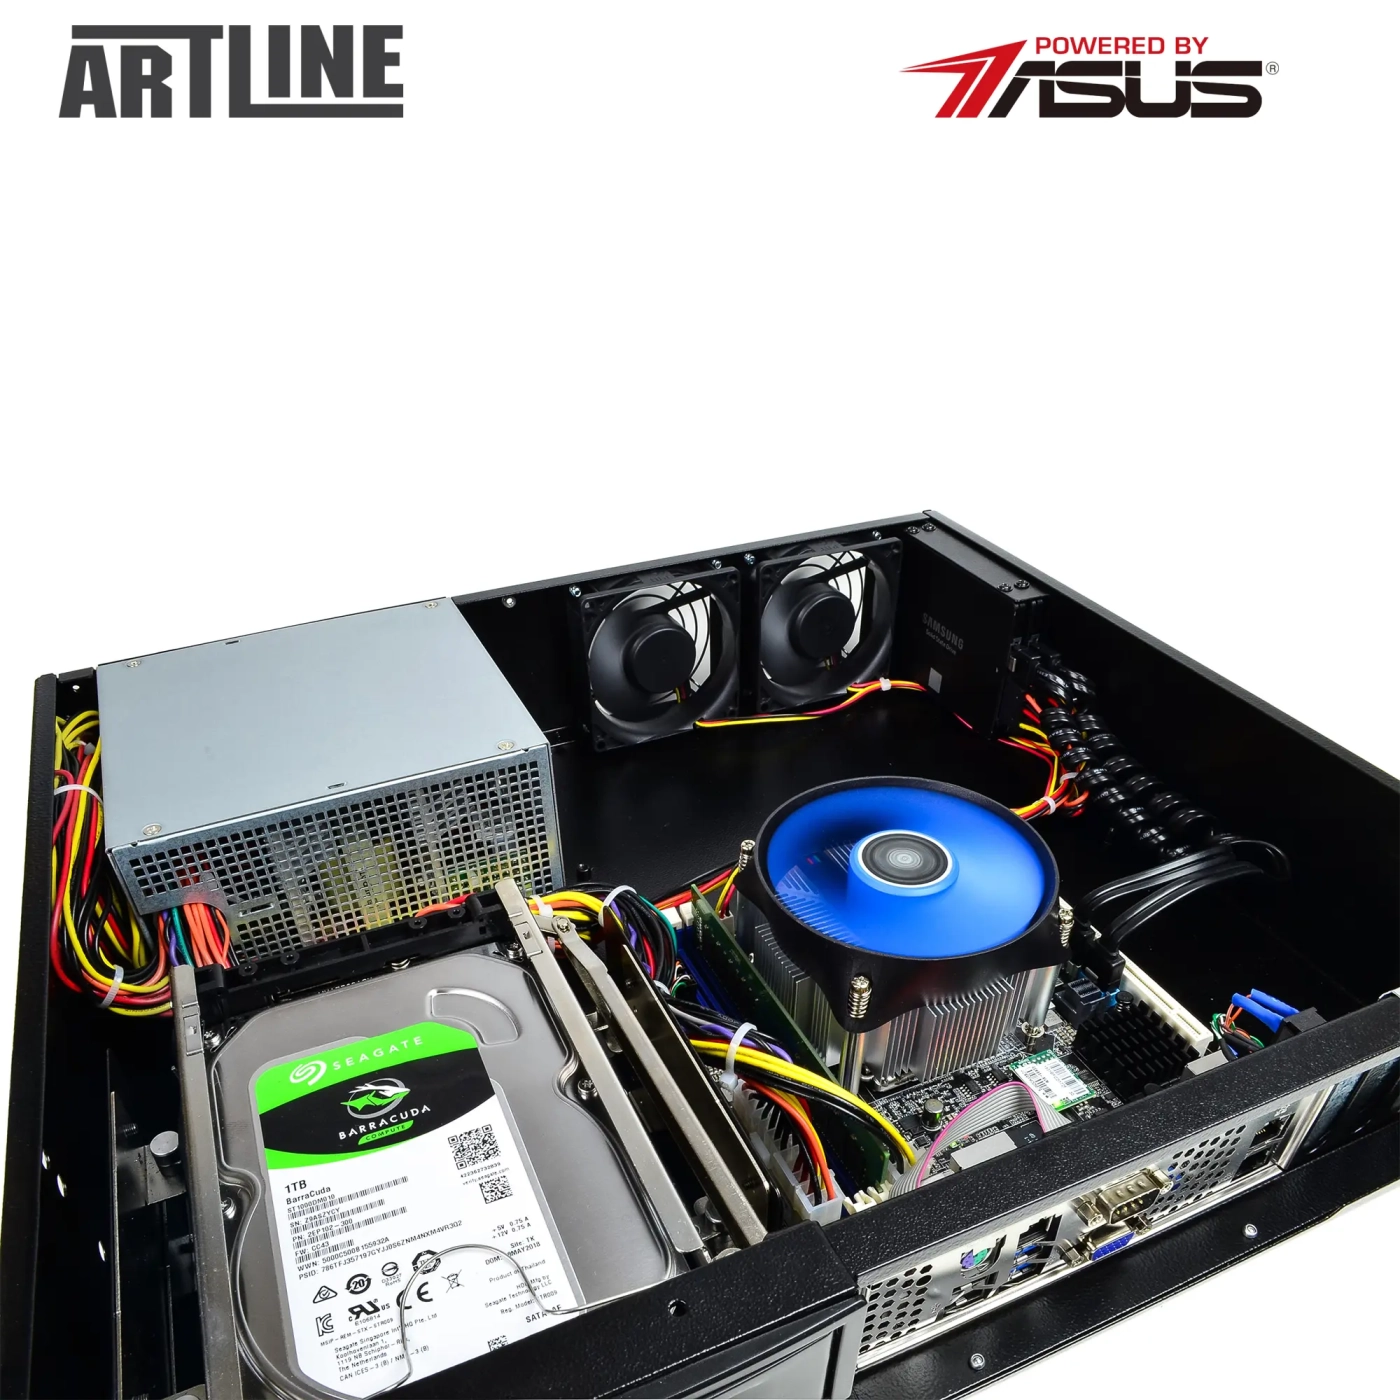 Купить Сервер ARTLINE Business R37 (R37v75) - фото 10